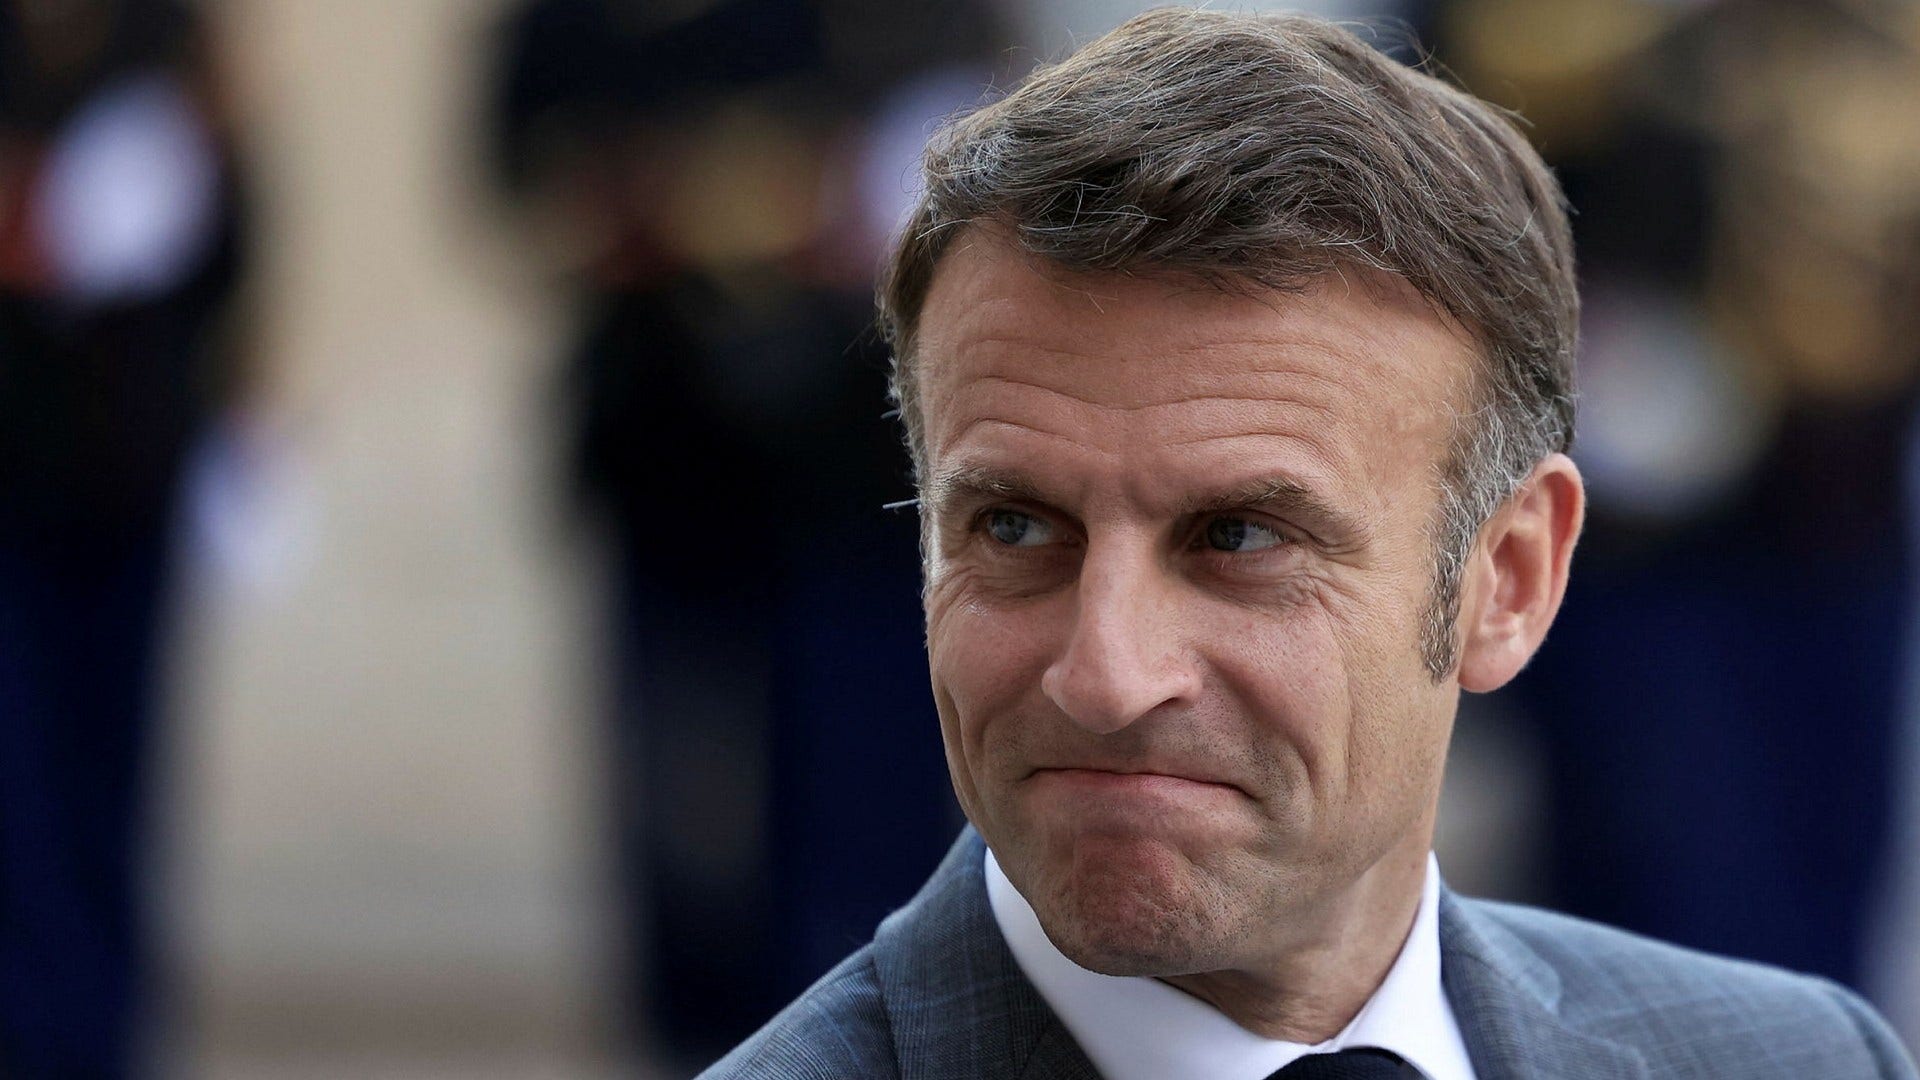 Commento: La scommessa di Macron potrebbe colpire tutta l'Europa